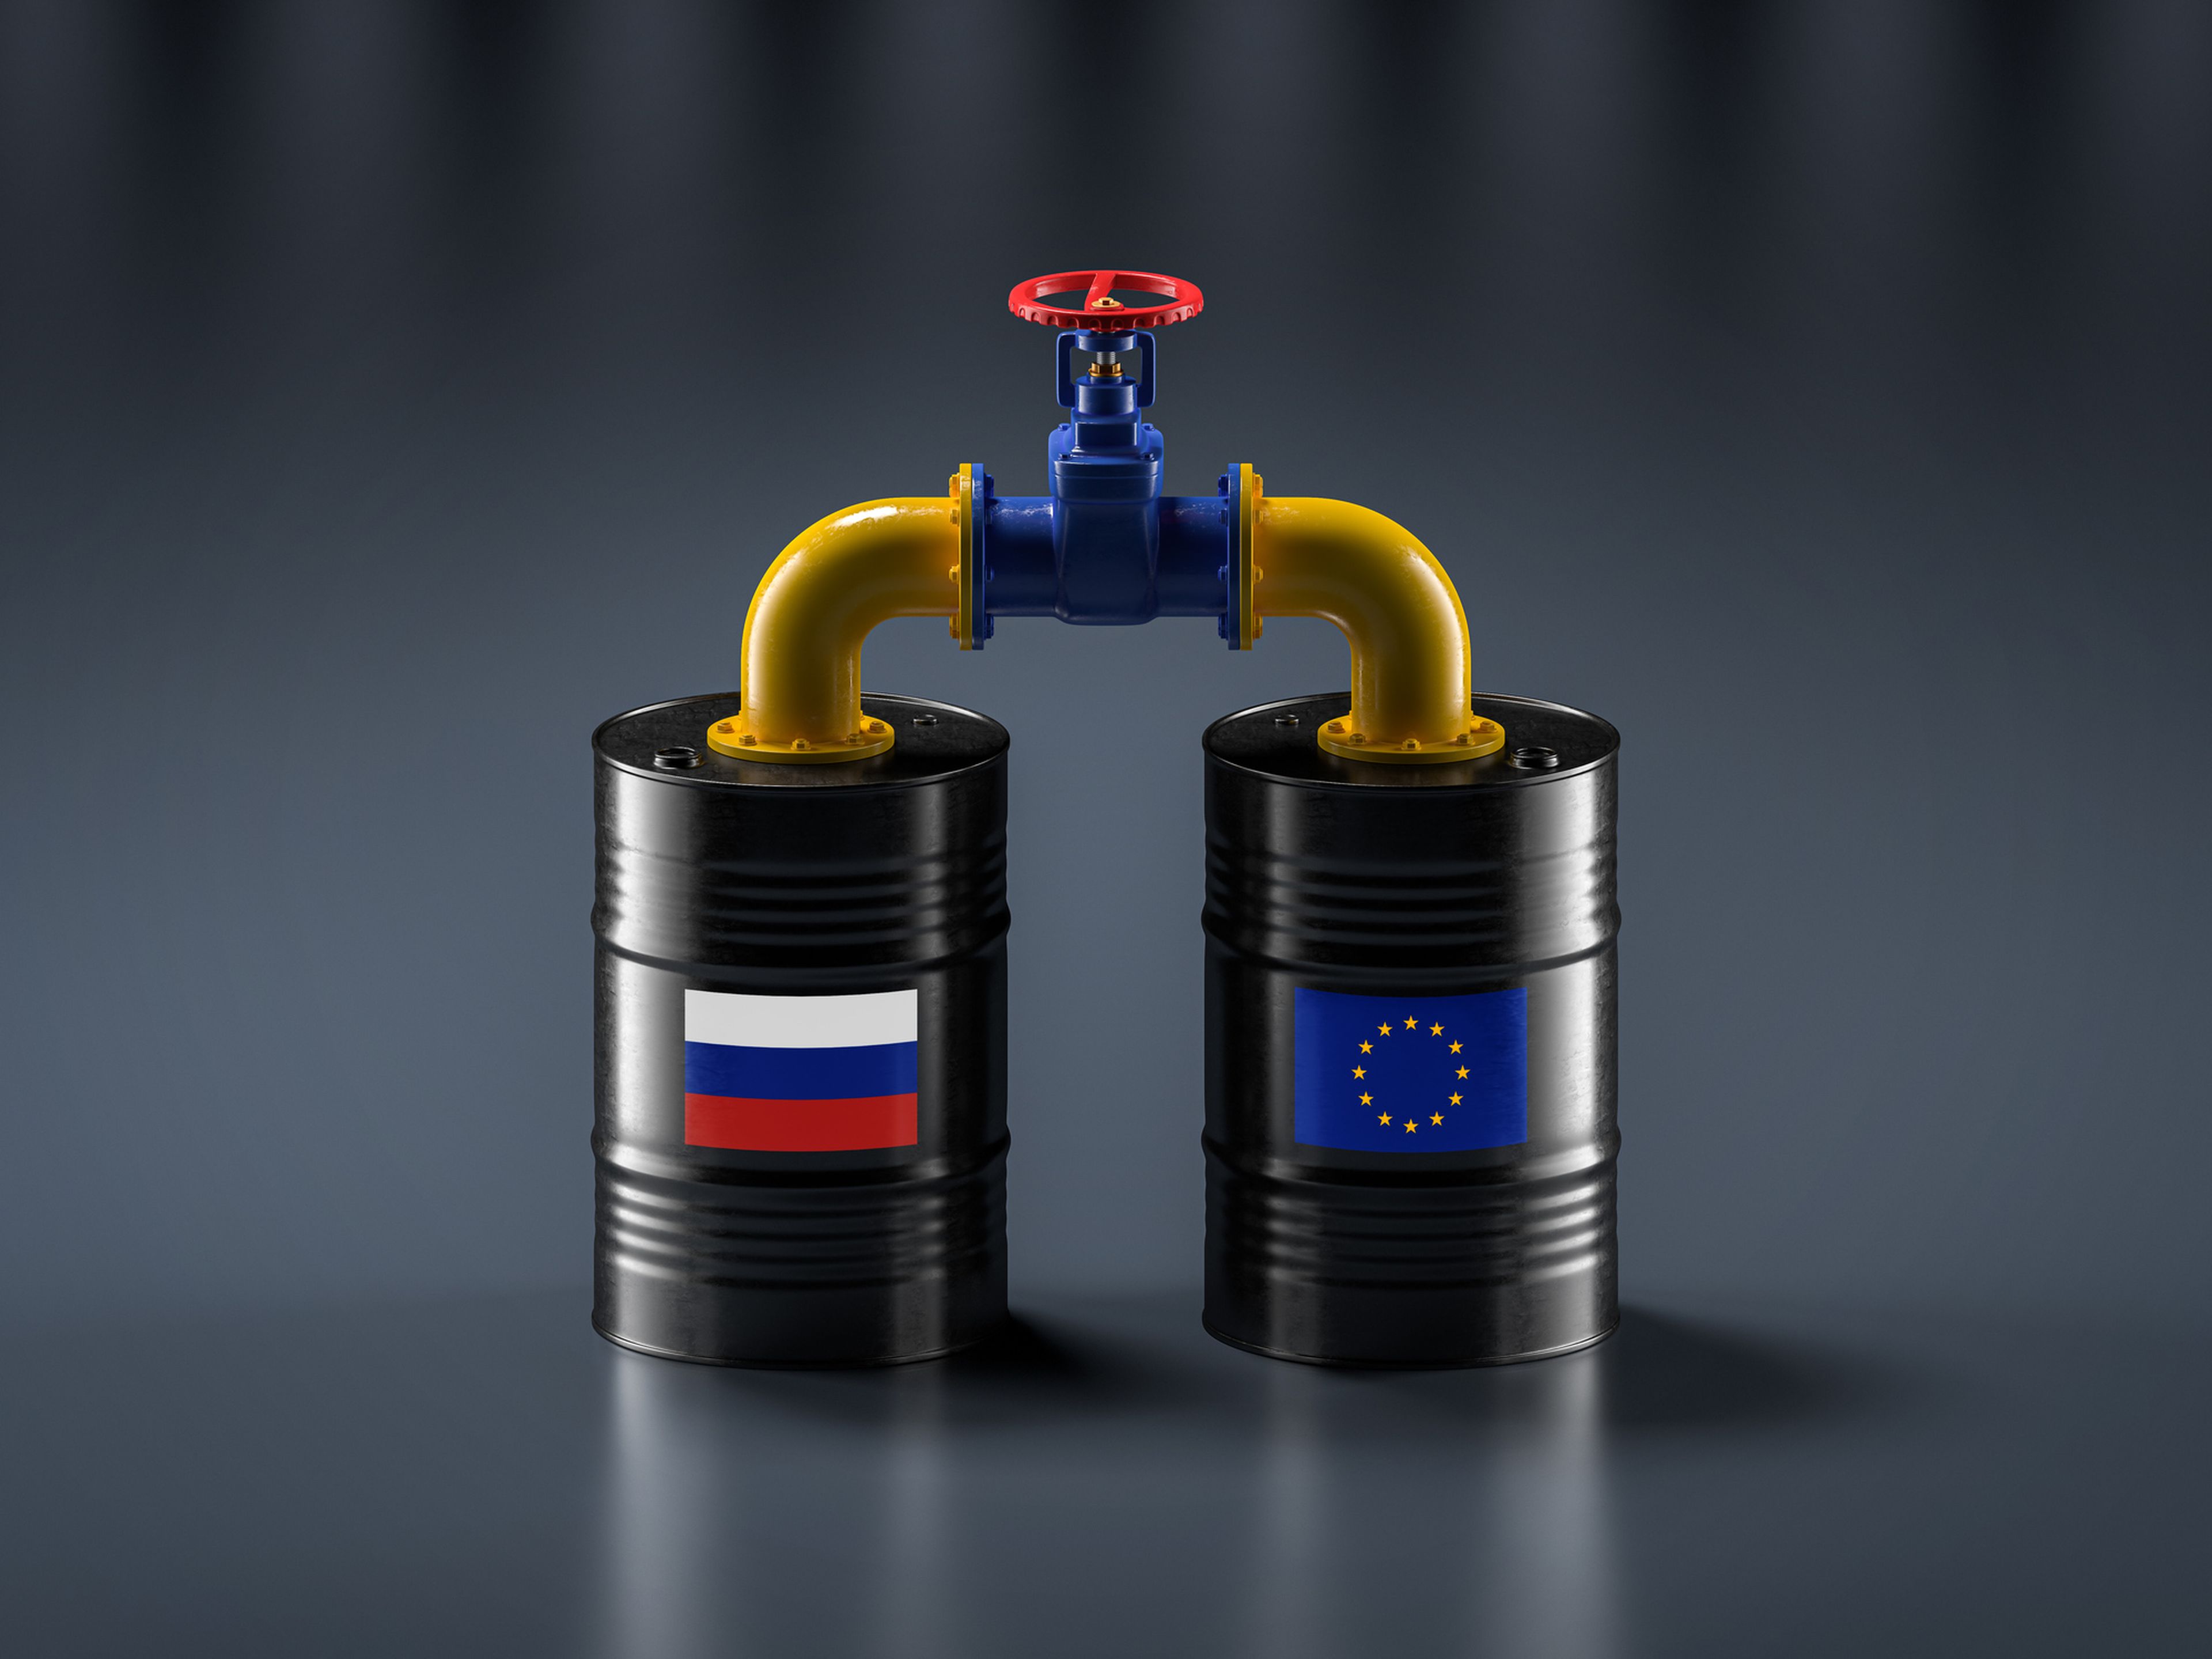 2 barriles de petróleo unidos por una tubería. Uno tiene la bandera de Rusia y otro la de la UE.